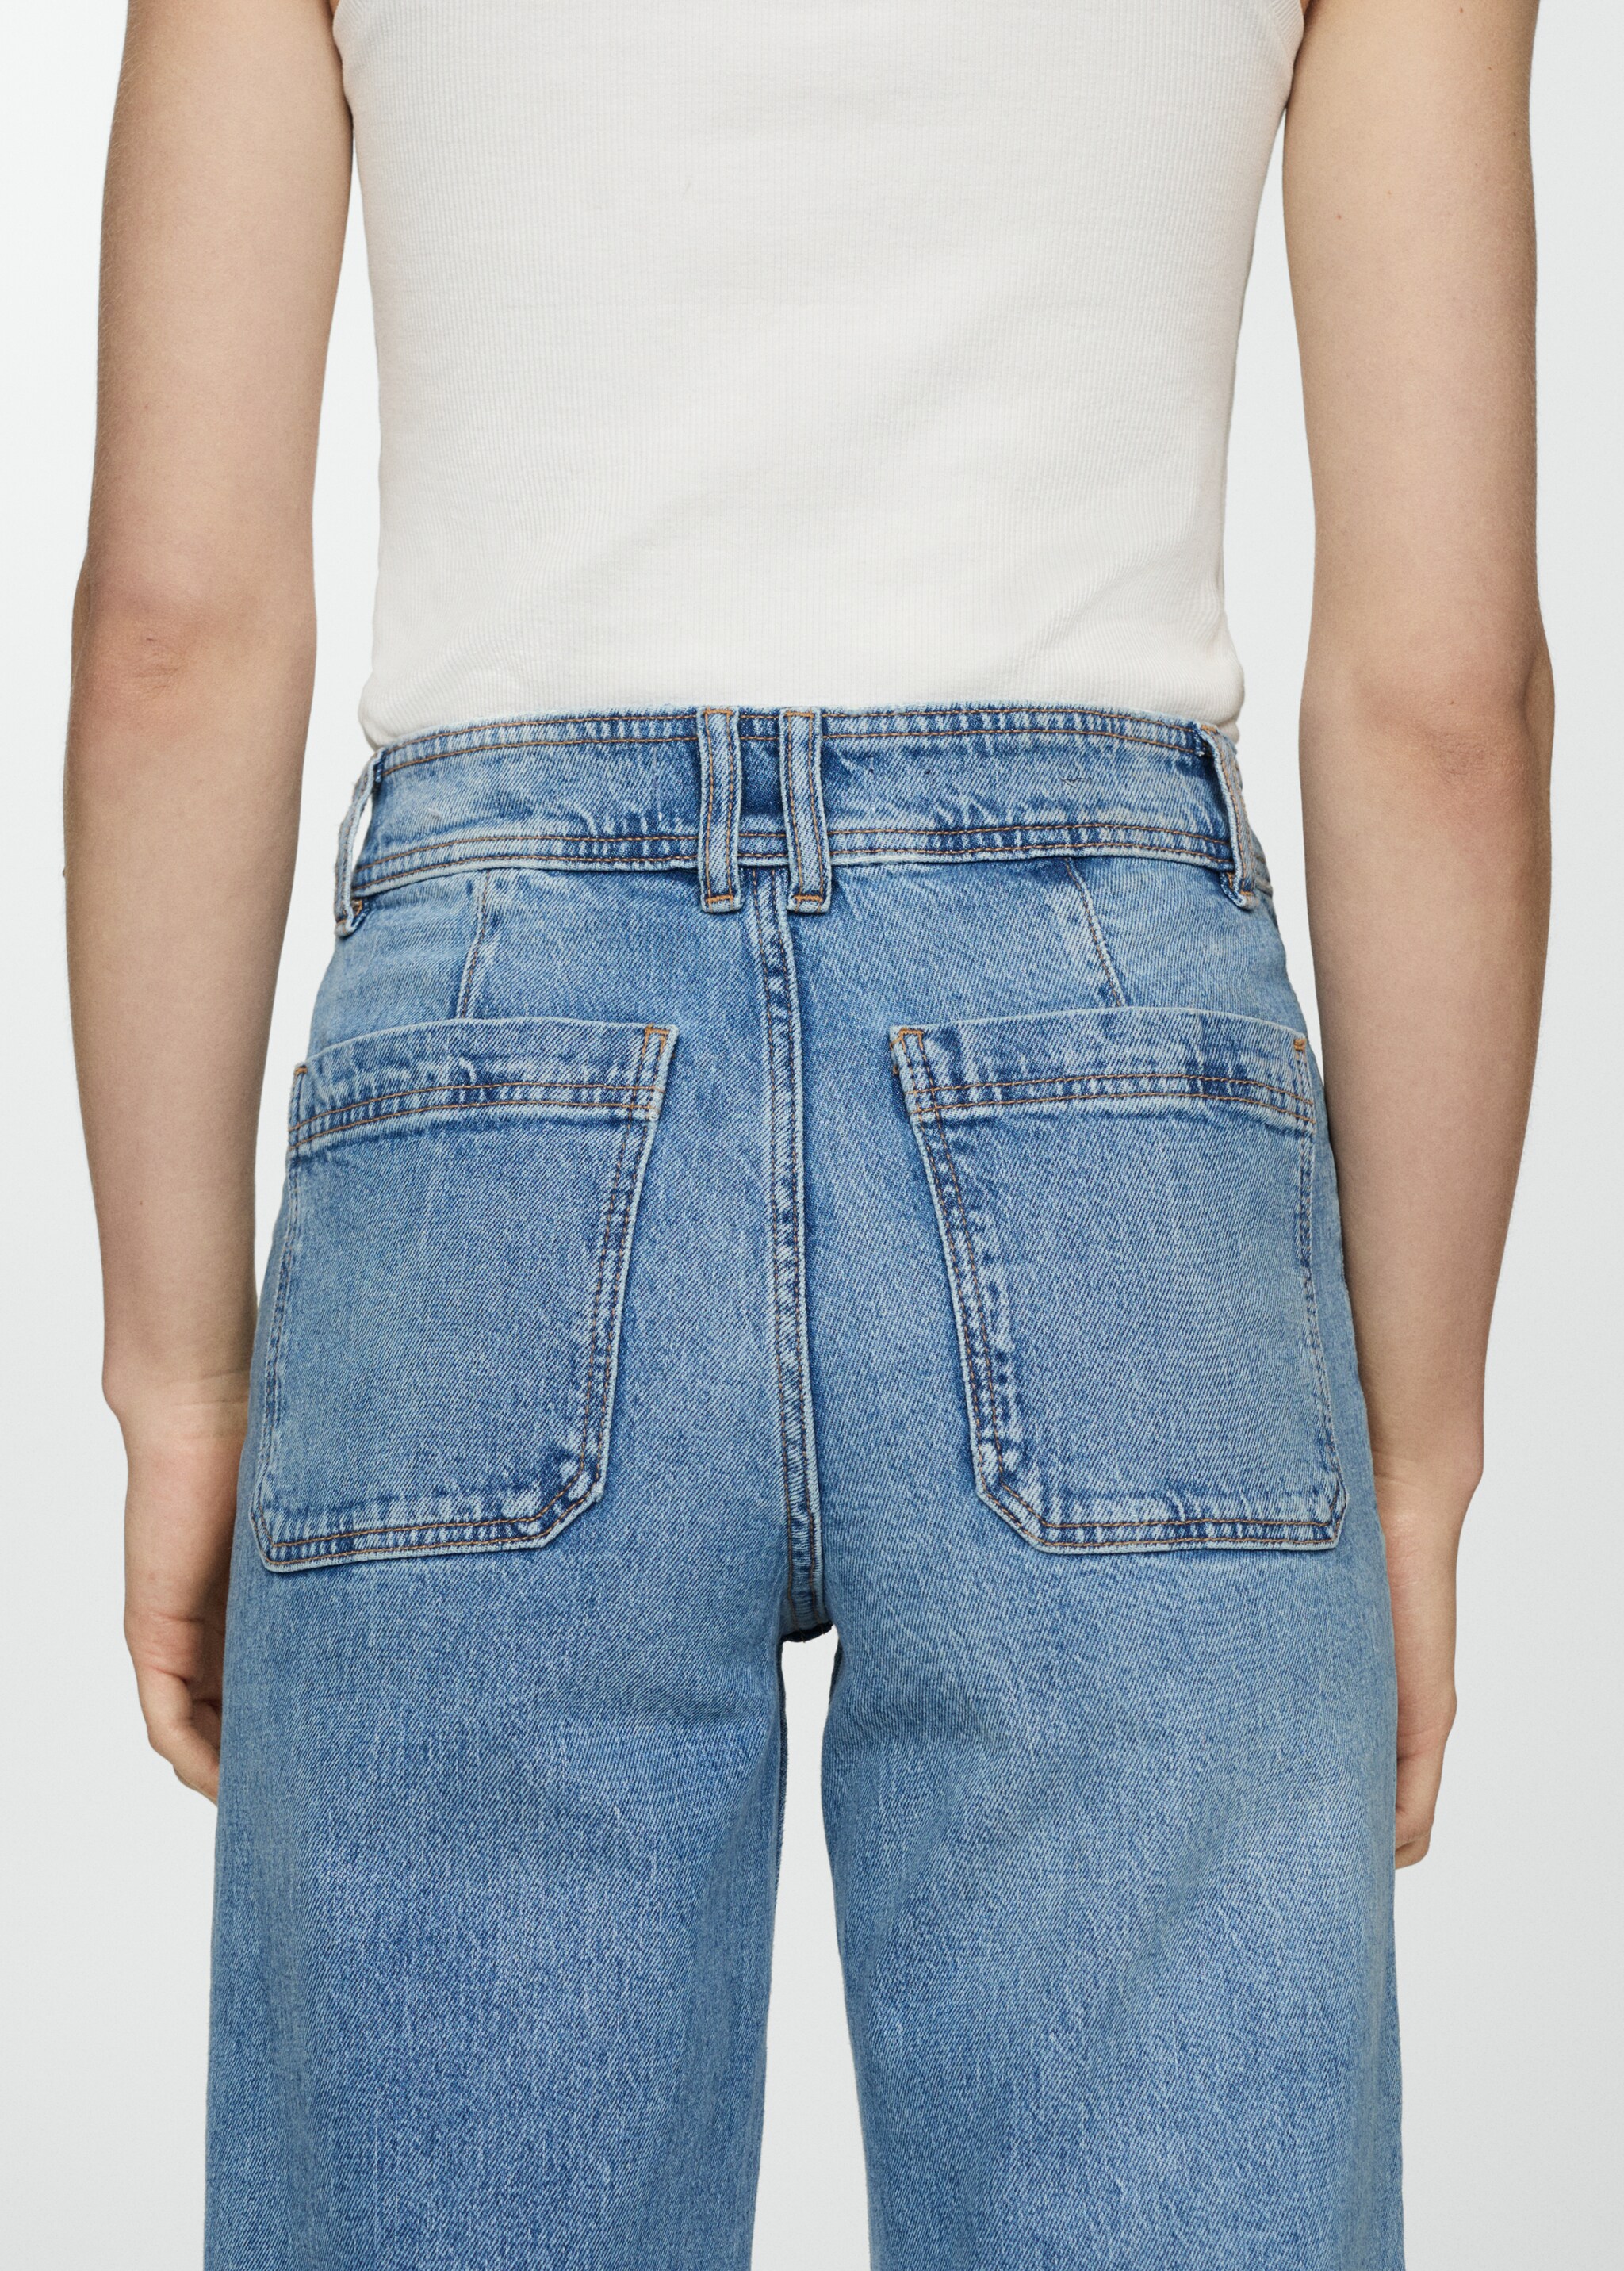 Jeans Catherin culotte tiro alto - Detalle del artículo 6